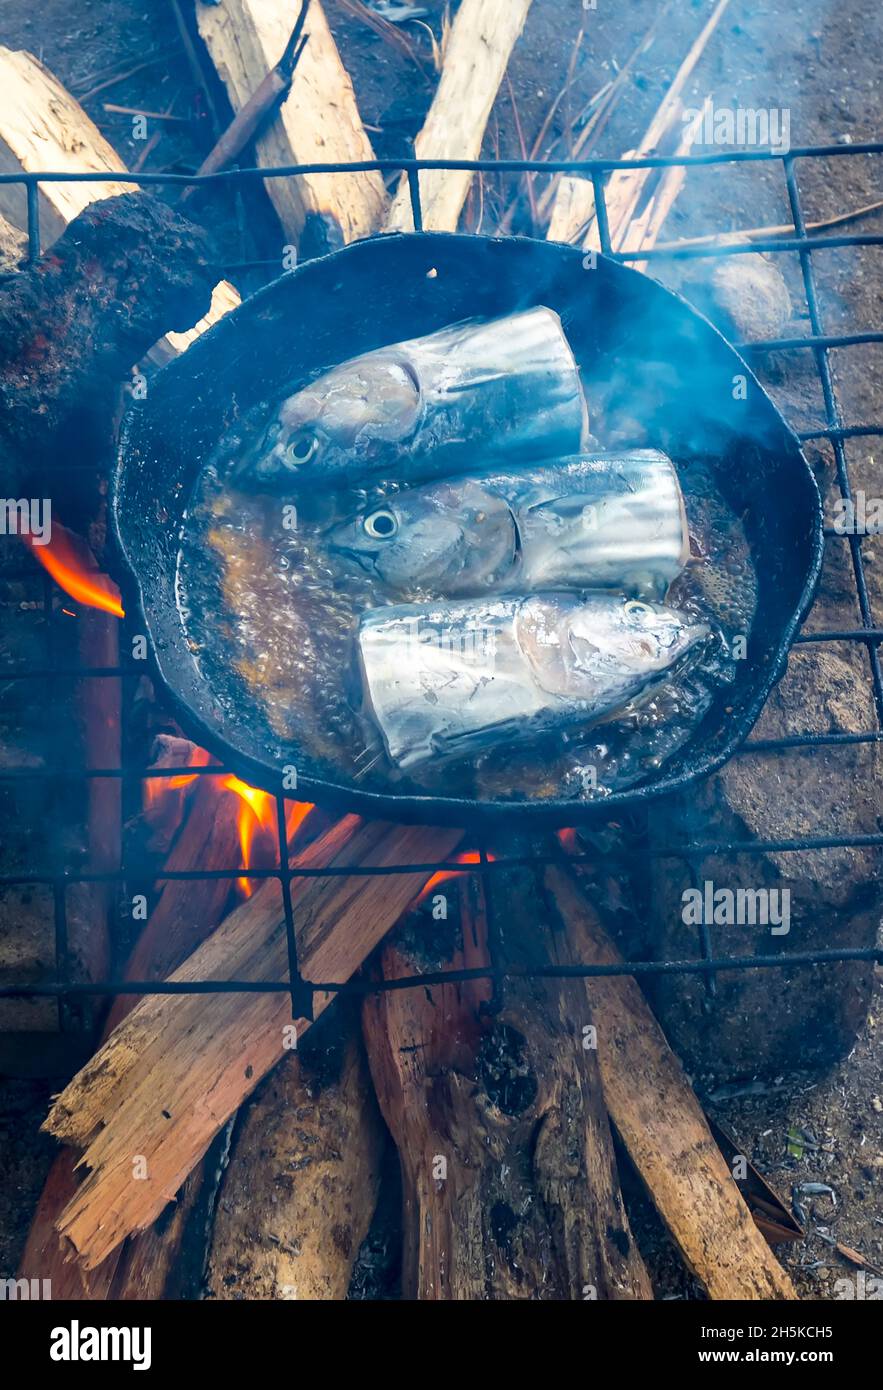 Fischköpfe kochen in einem Straßenfutterstand auf dem Lebensmittelmarkt von Madang, Papua-Neuguinea; Madang, Provinz Madang, Papua-Neuguinea Stockfoto